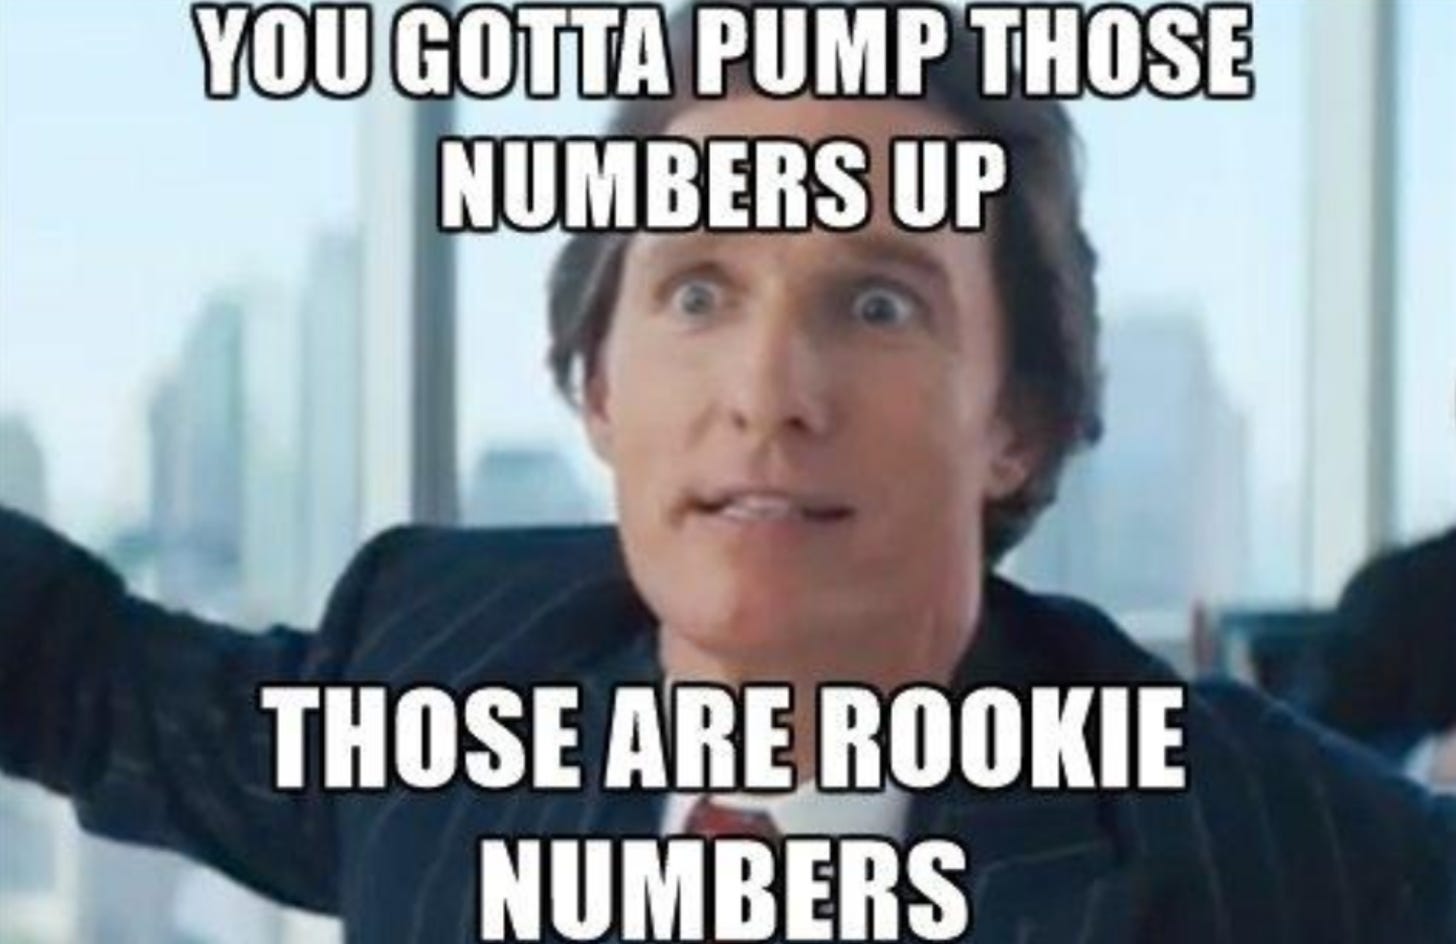 6 people online. Rookie numbers. : ThoseAreRookieNumbers